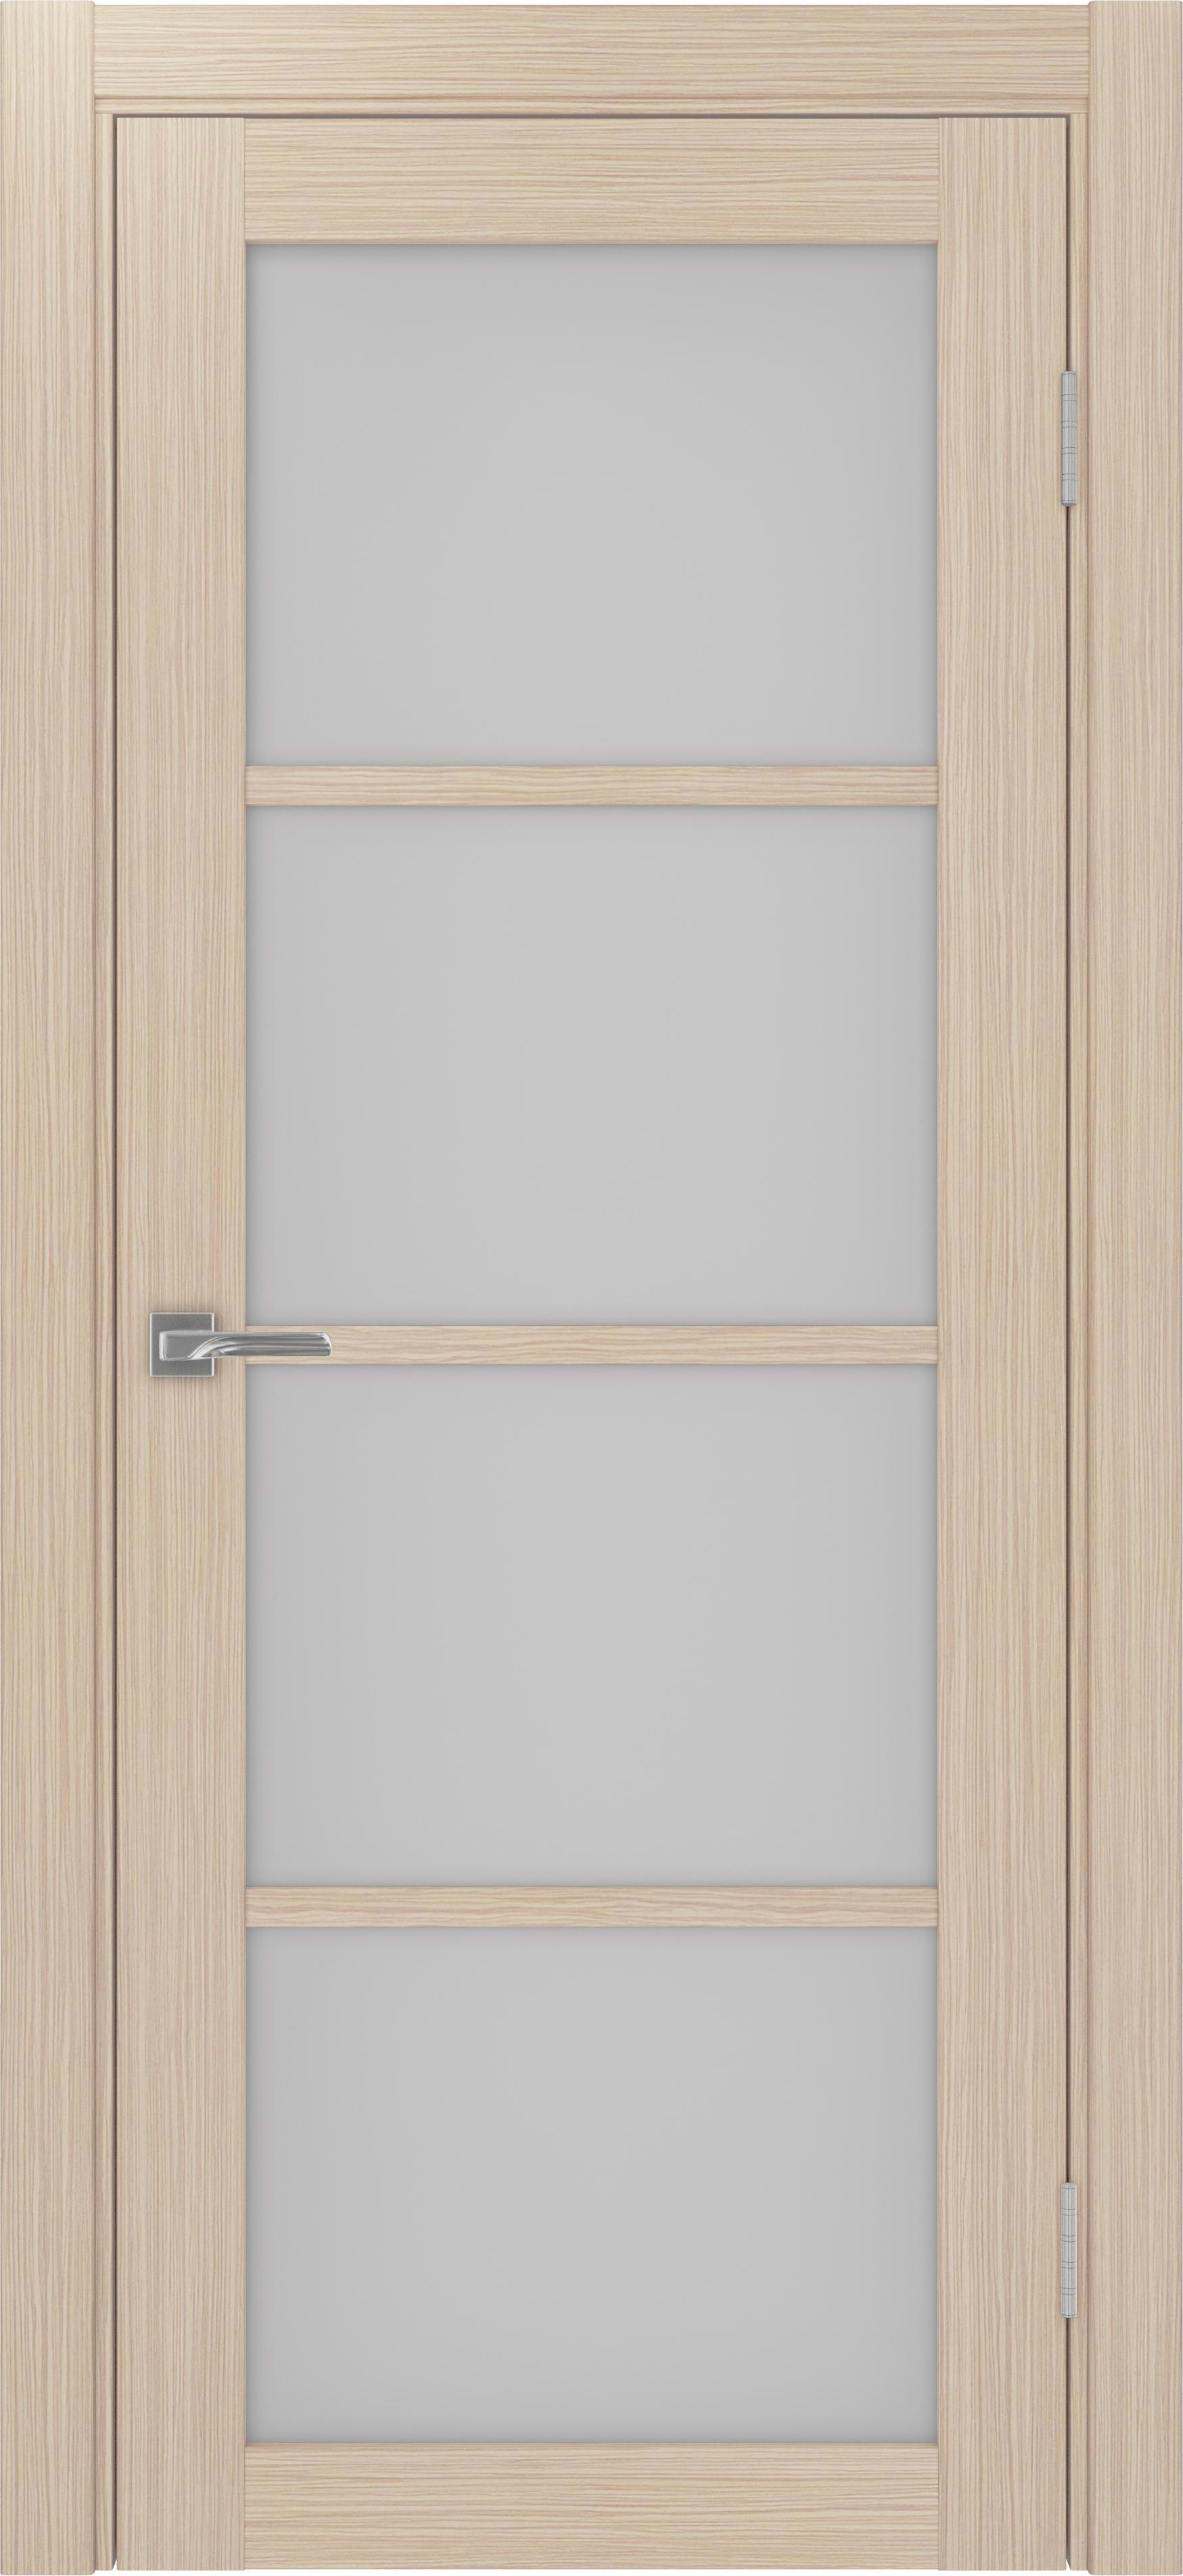 Межкомнатная дверь «Турин 540.2222 Дуб белёный» стекло сатин